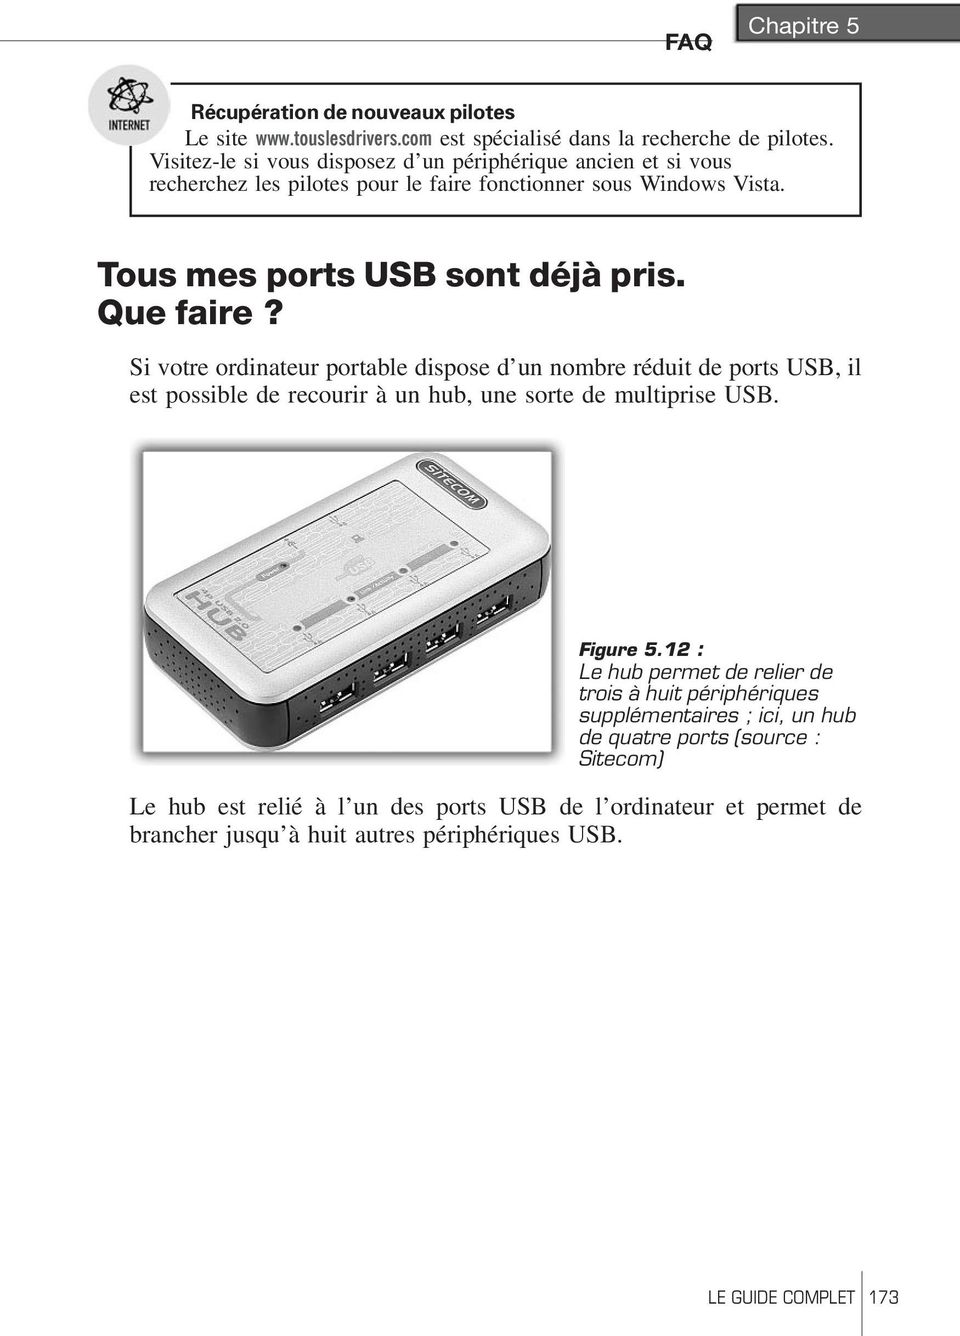 Que faire? Si votre ordinateur portable dispose d un nombre réduit de ports USB, il est possible de recourir à un hub, une sorte de multiprise USB. Figure 5.